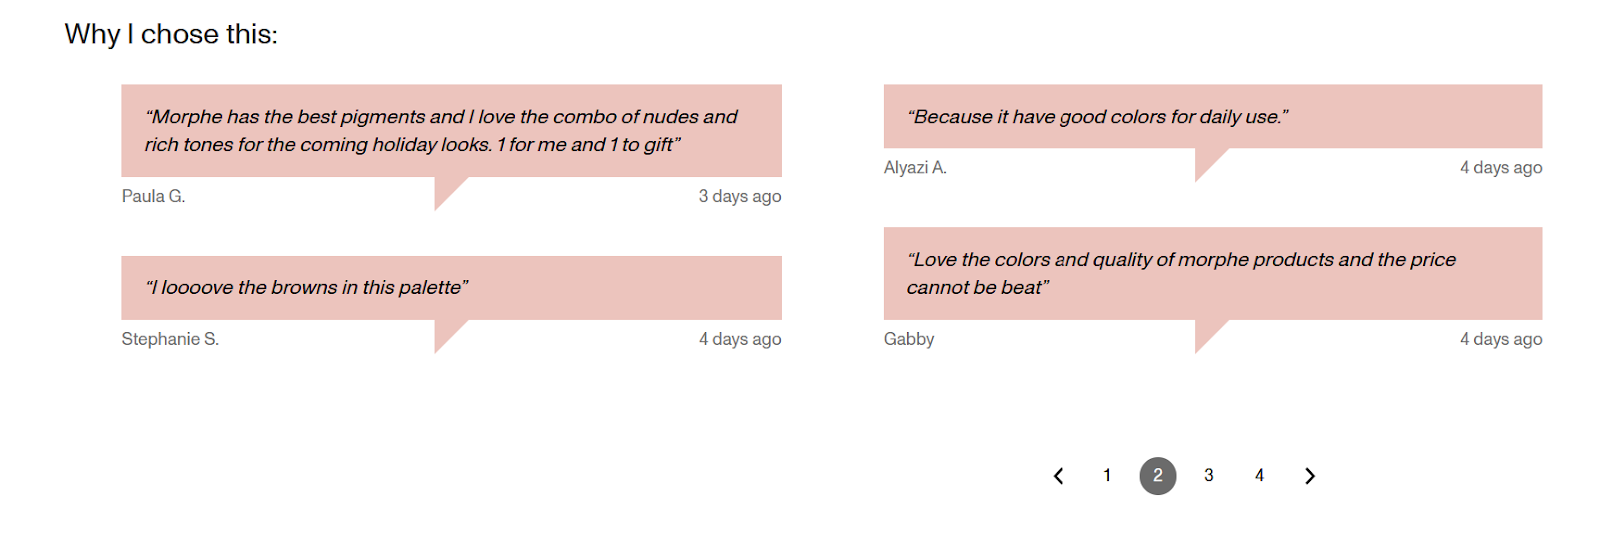 Zrzuty ekranu przedstawiające dymki z komentarzami przy kasie, przedstawiające powody, dla których klienci decydują się na zakup palety do makijażu